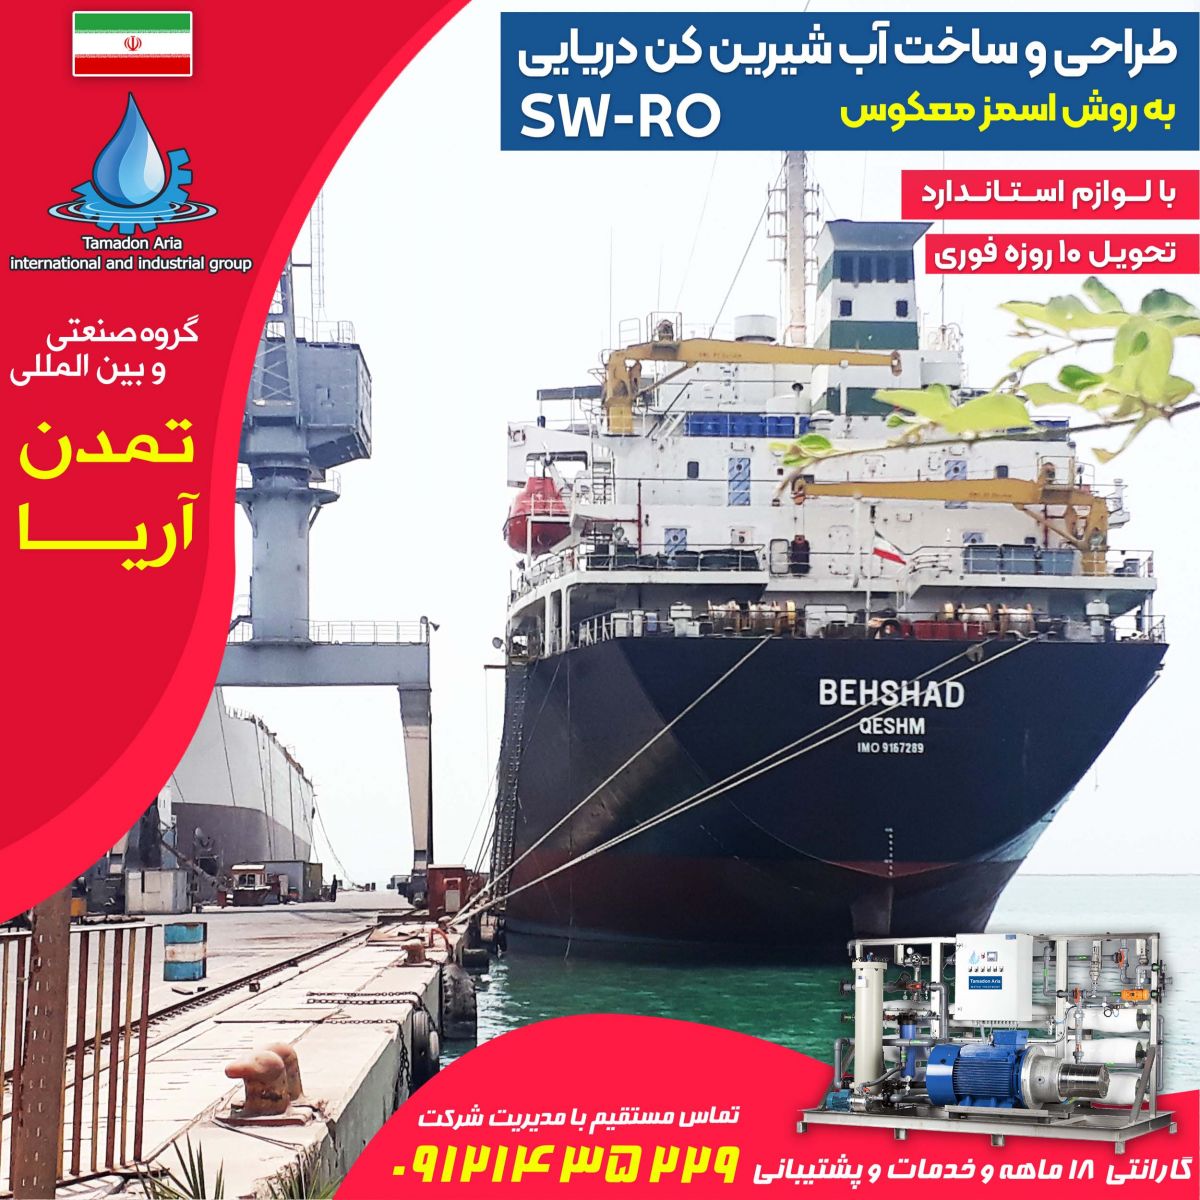 آب شیرین کن دریایی کشتی بهشاد کشتی رانی جمهوری اسلامی ایران